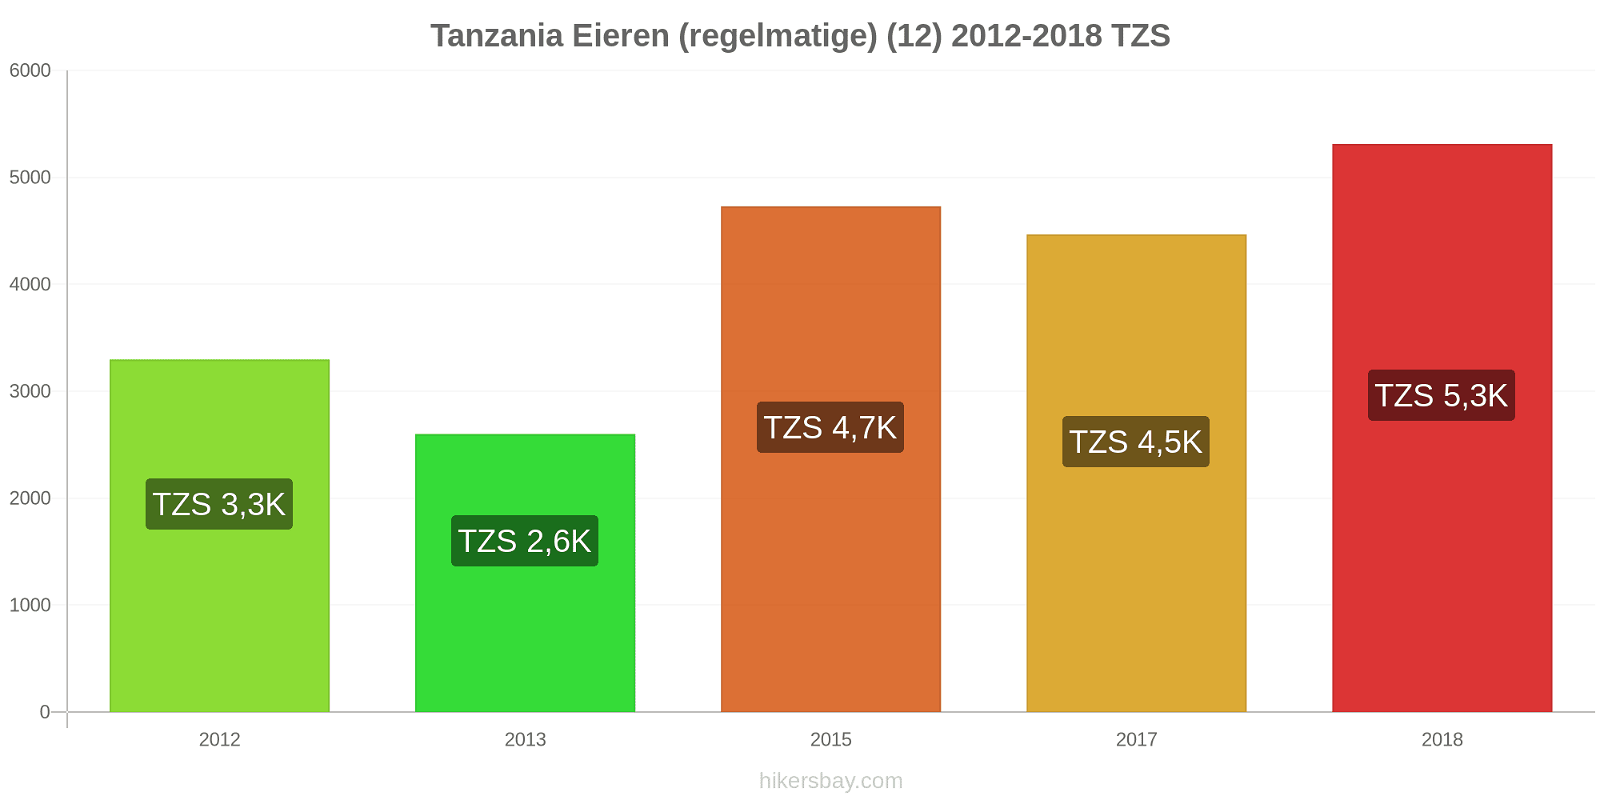 Tanzania prijswijzigingen Eieren (regelmatig) (12) hikersbay.com